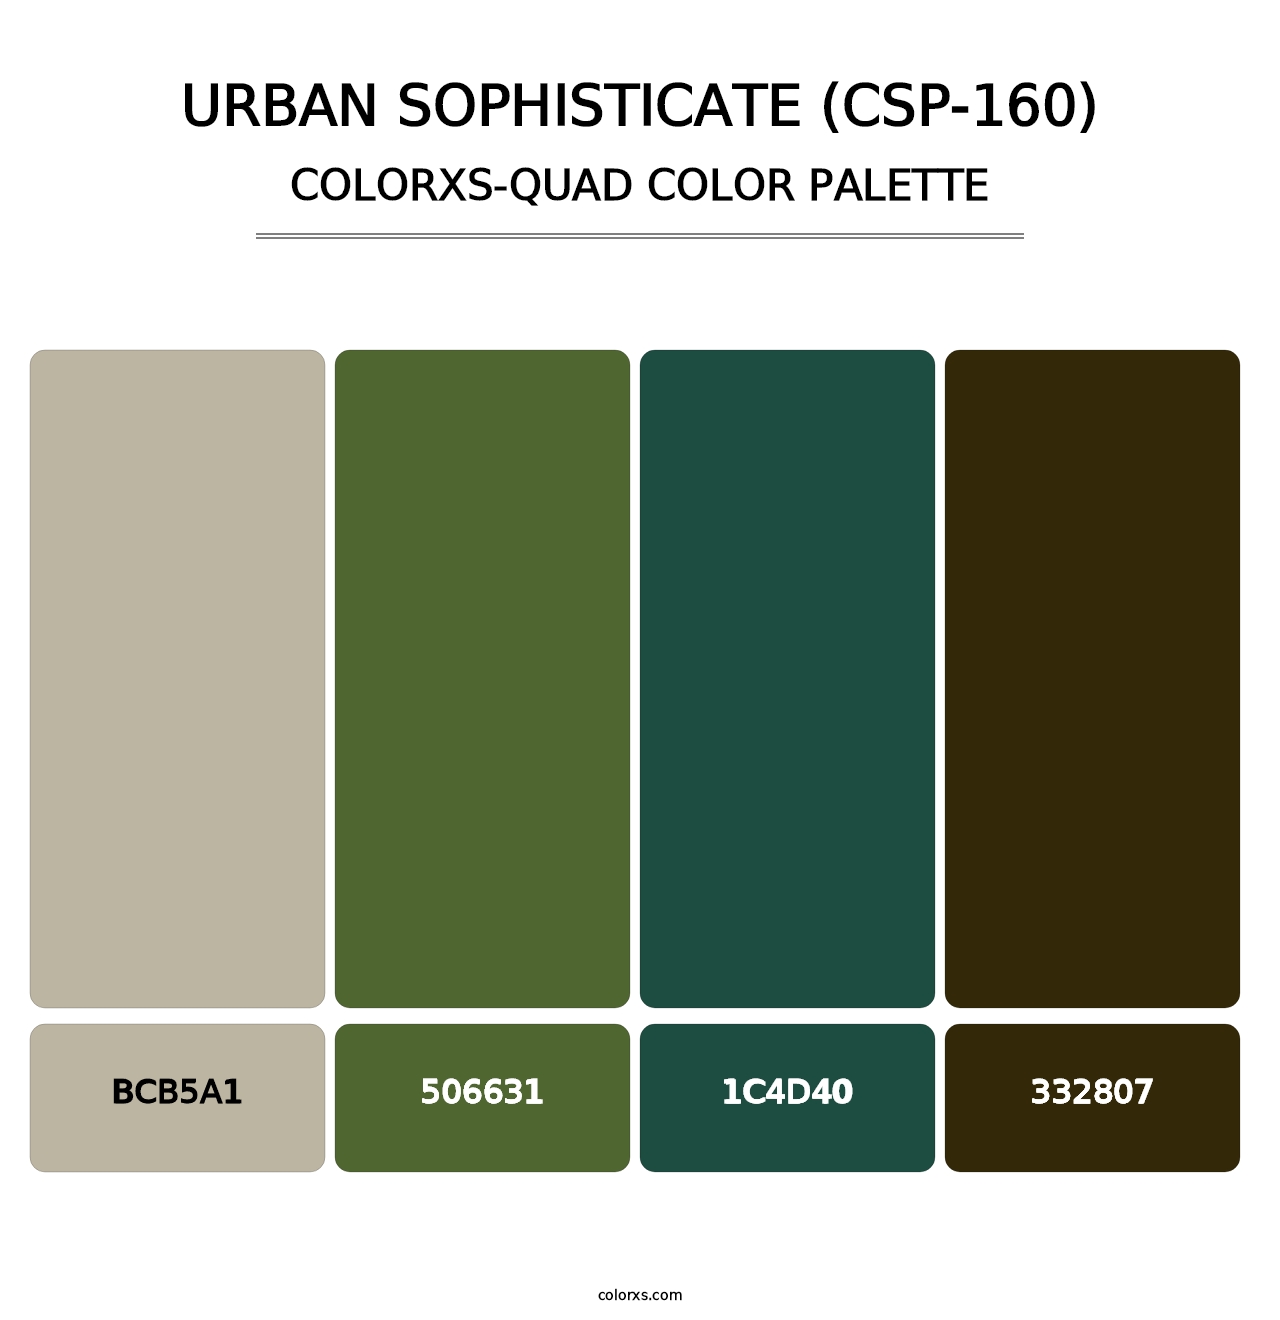 Urban Sophisticate (CSP-160) - Colorxs Quad Palette